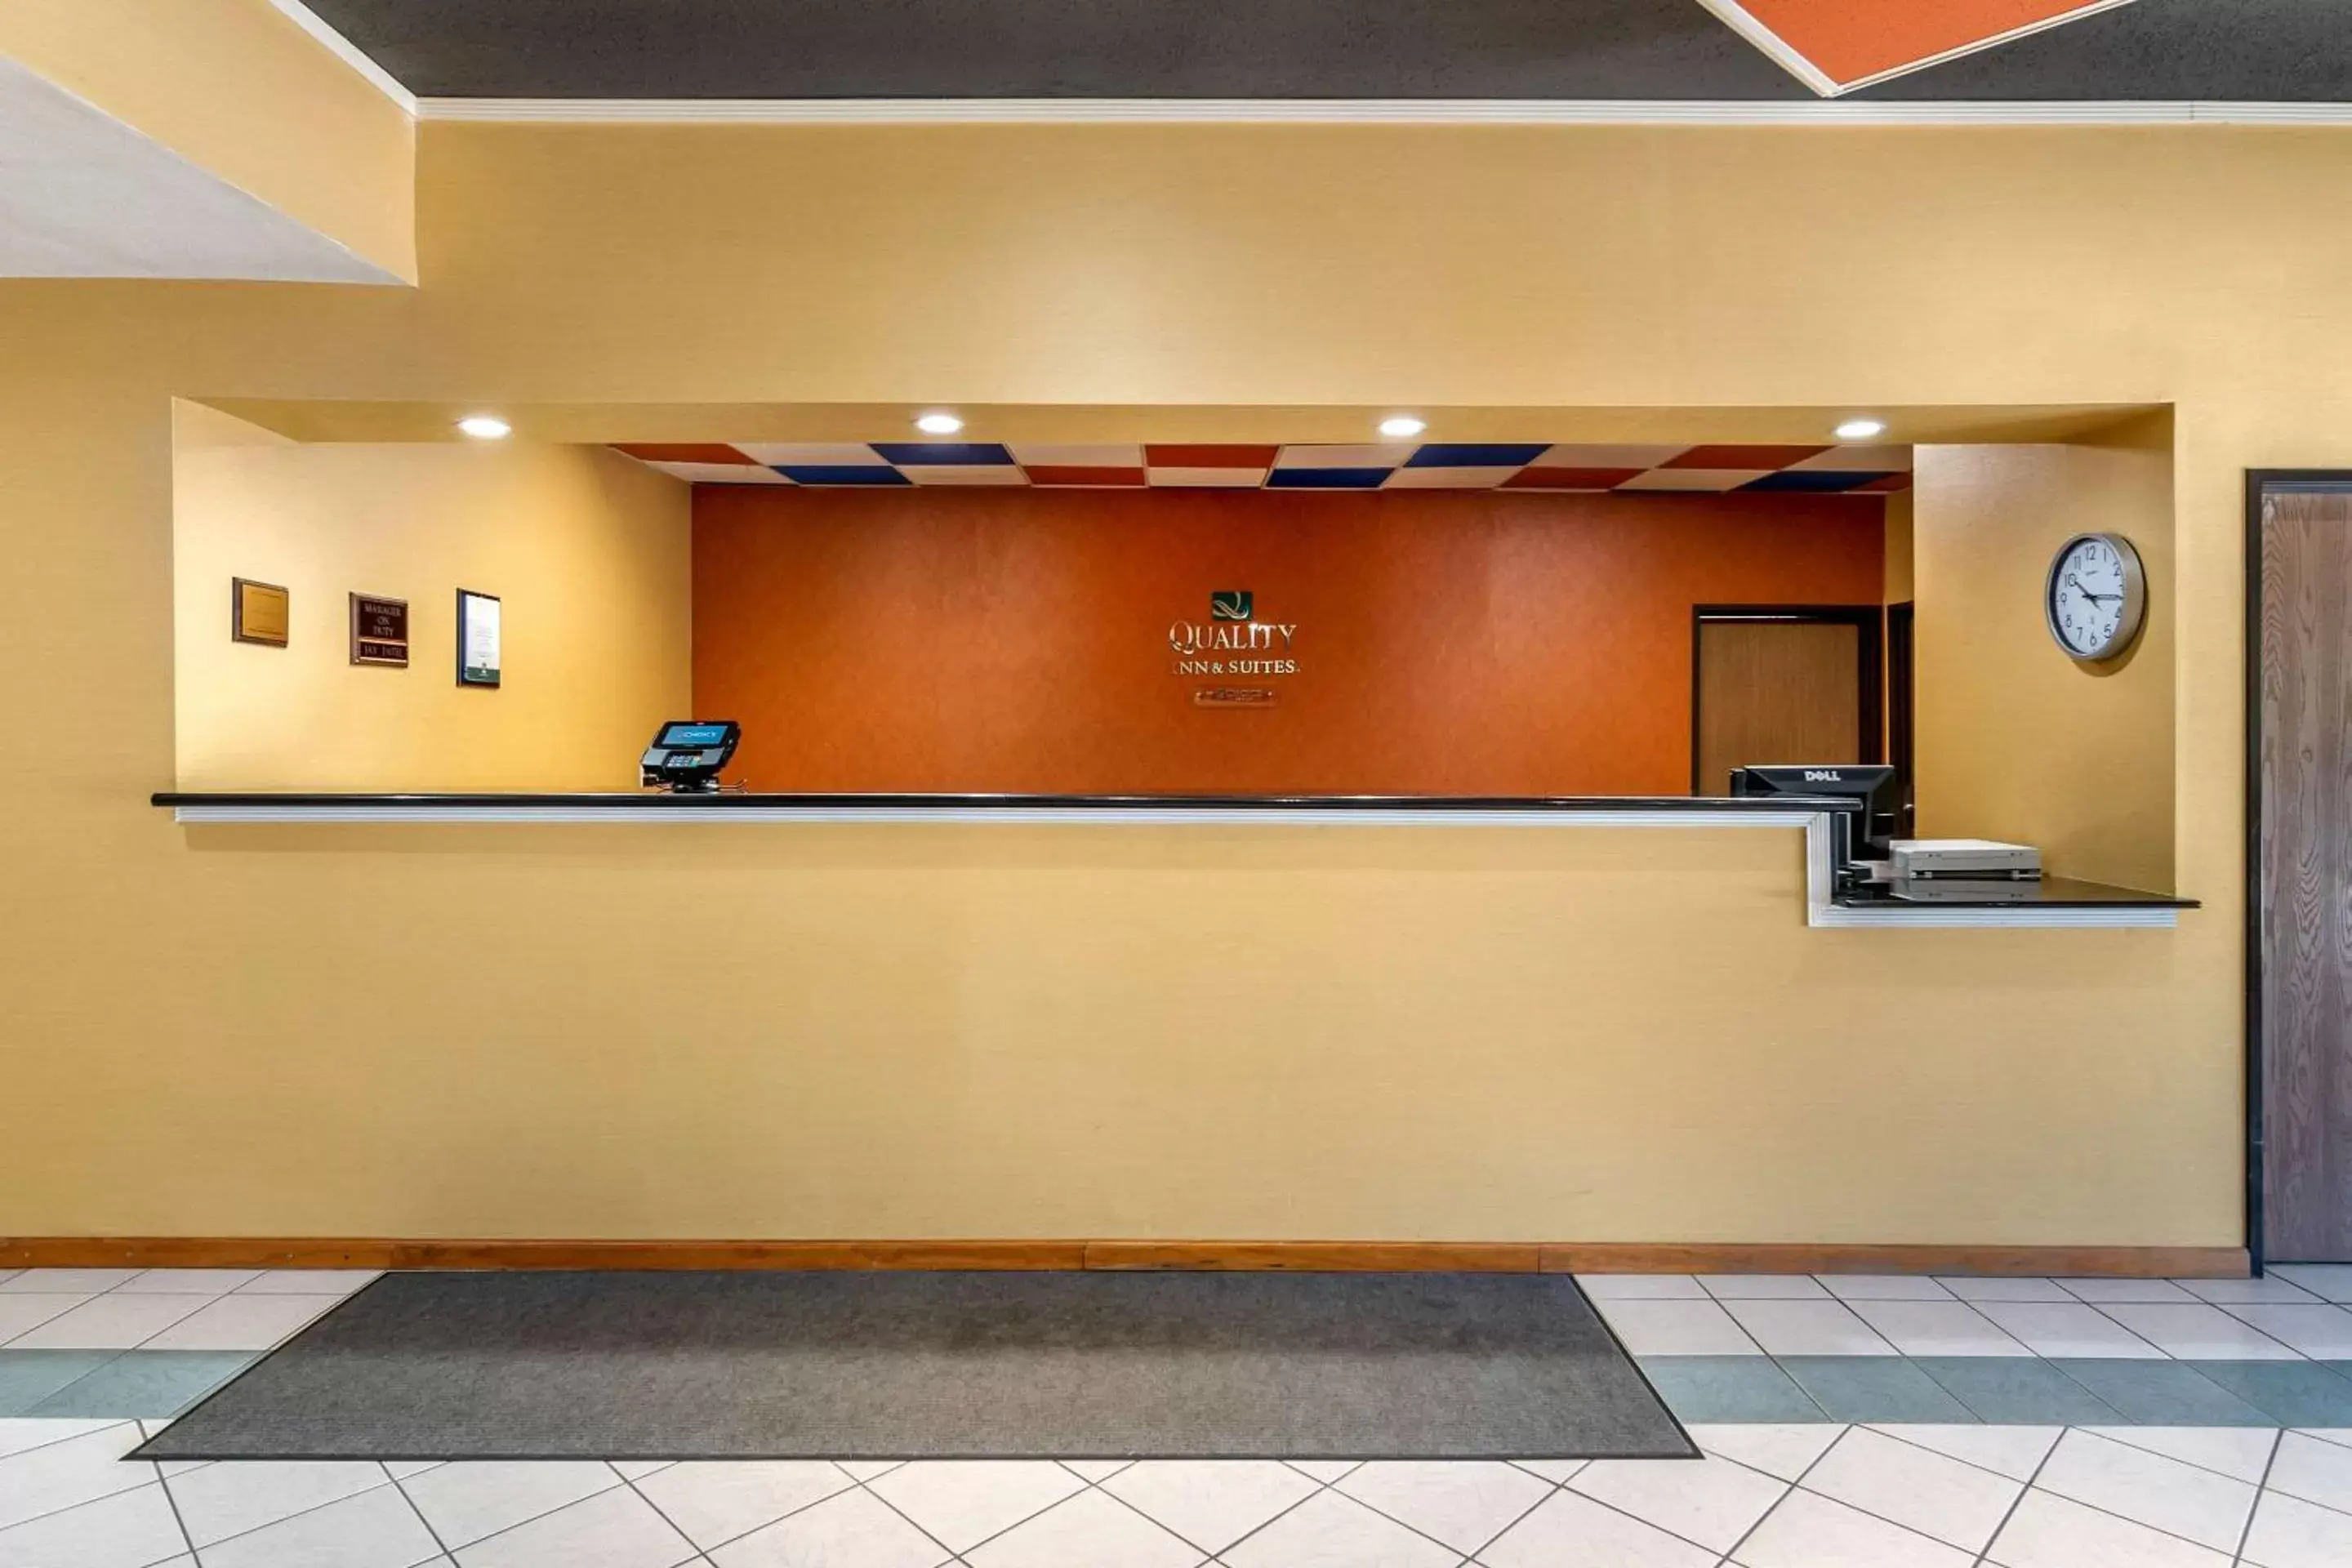 Lobby or reception, Lobby/Reception in Quality Inn & Suites Lenexa Kansas City